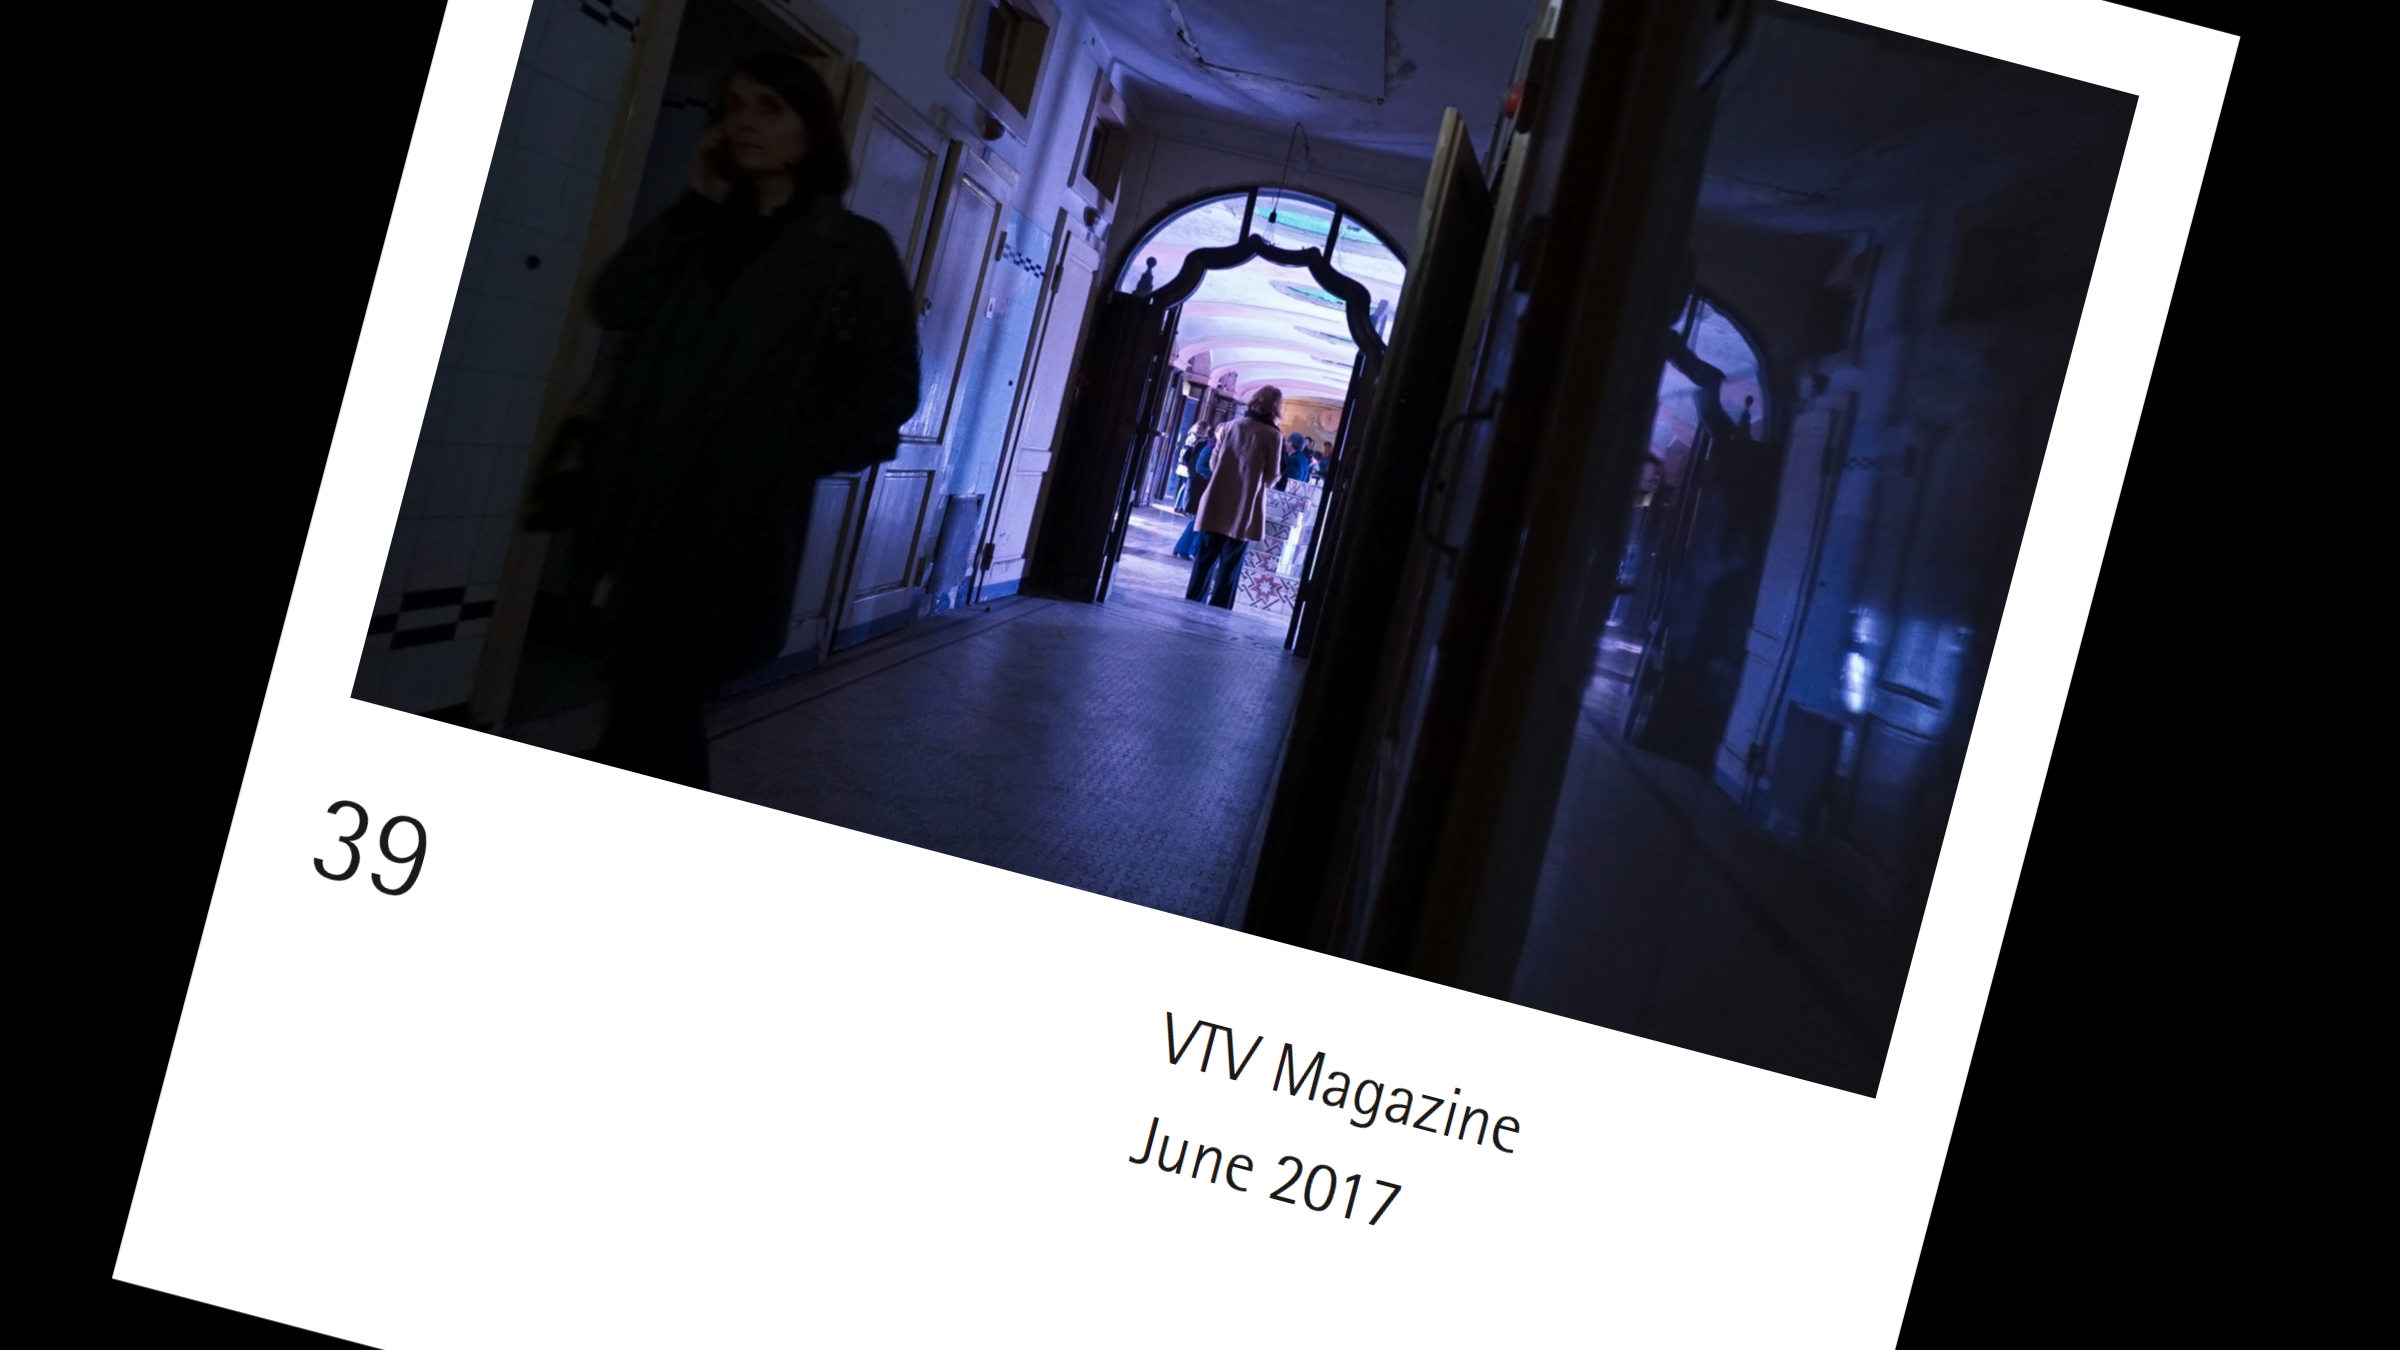 VTV PDF Magazine 39